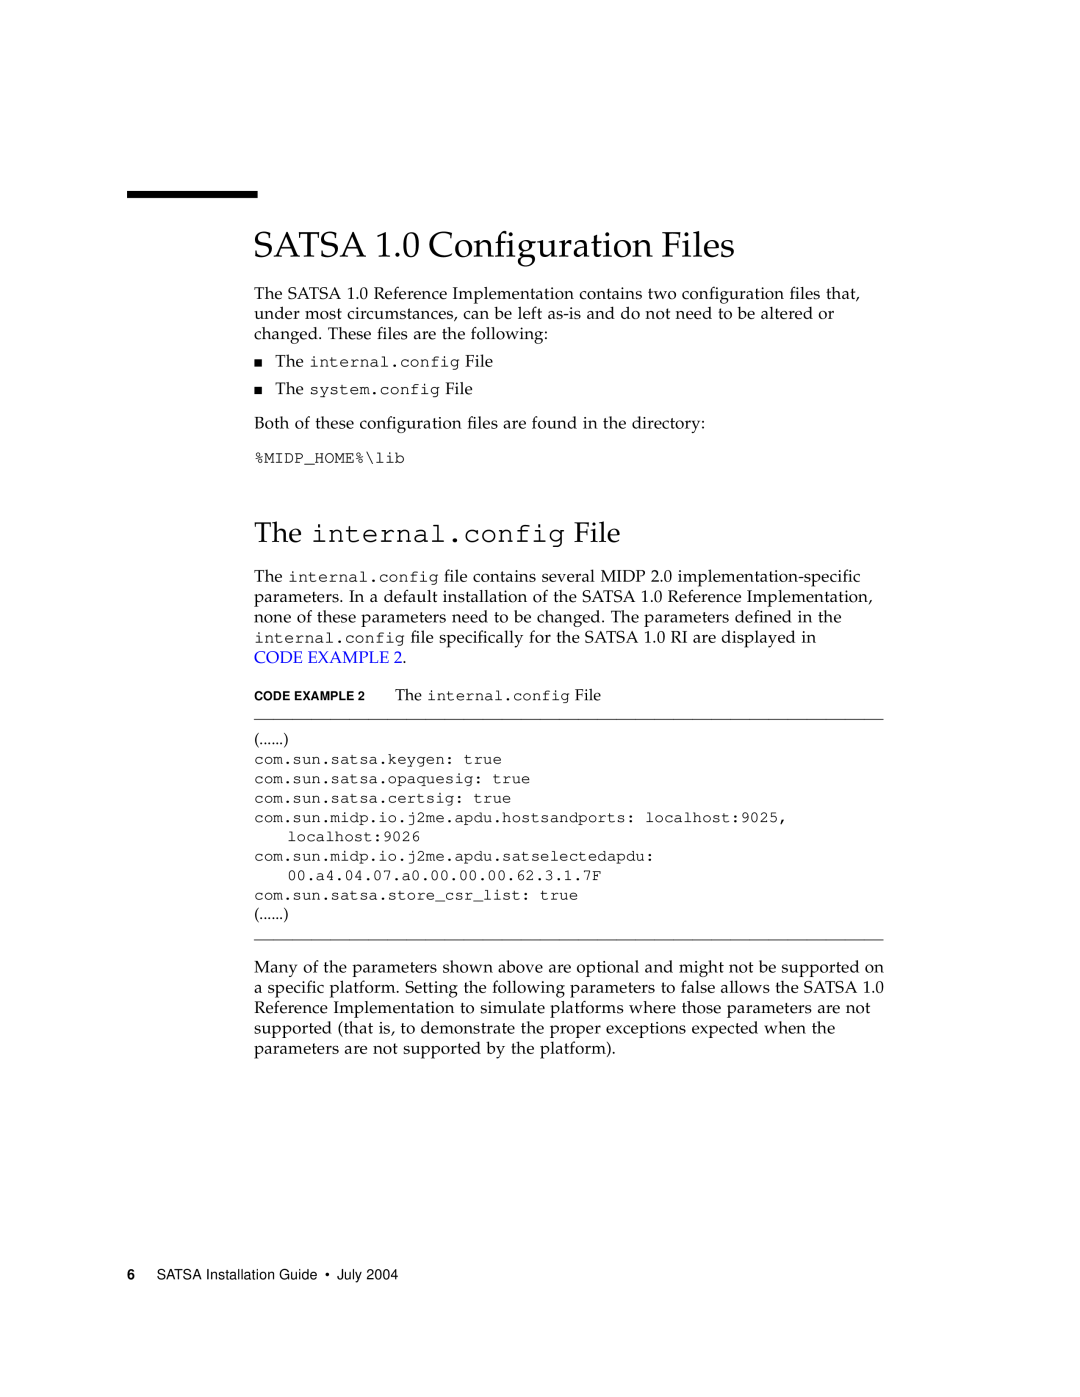 Sun Microsystems manual SATSA 1.0 Configuration Files, The internal.config File, Code Example 